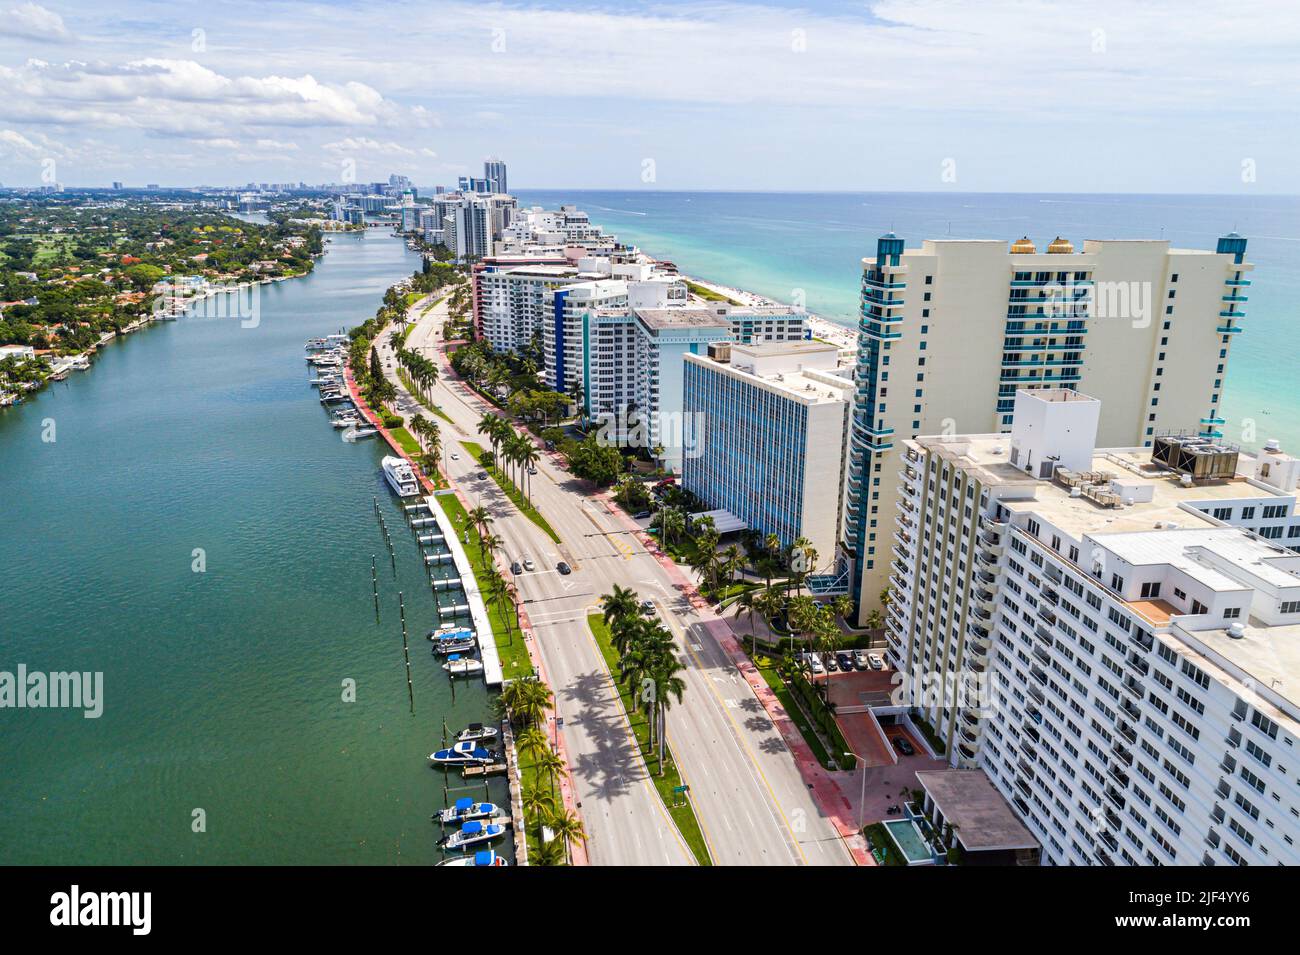 Miami Beach Florida, vista aérea desde arriba, Indian Creek Collins Avenue frente al mar, edificios de apartamentos frente al mar, Capobella Condominium Carr Foto de stock